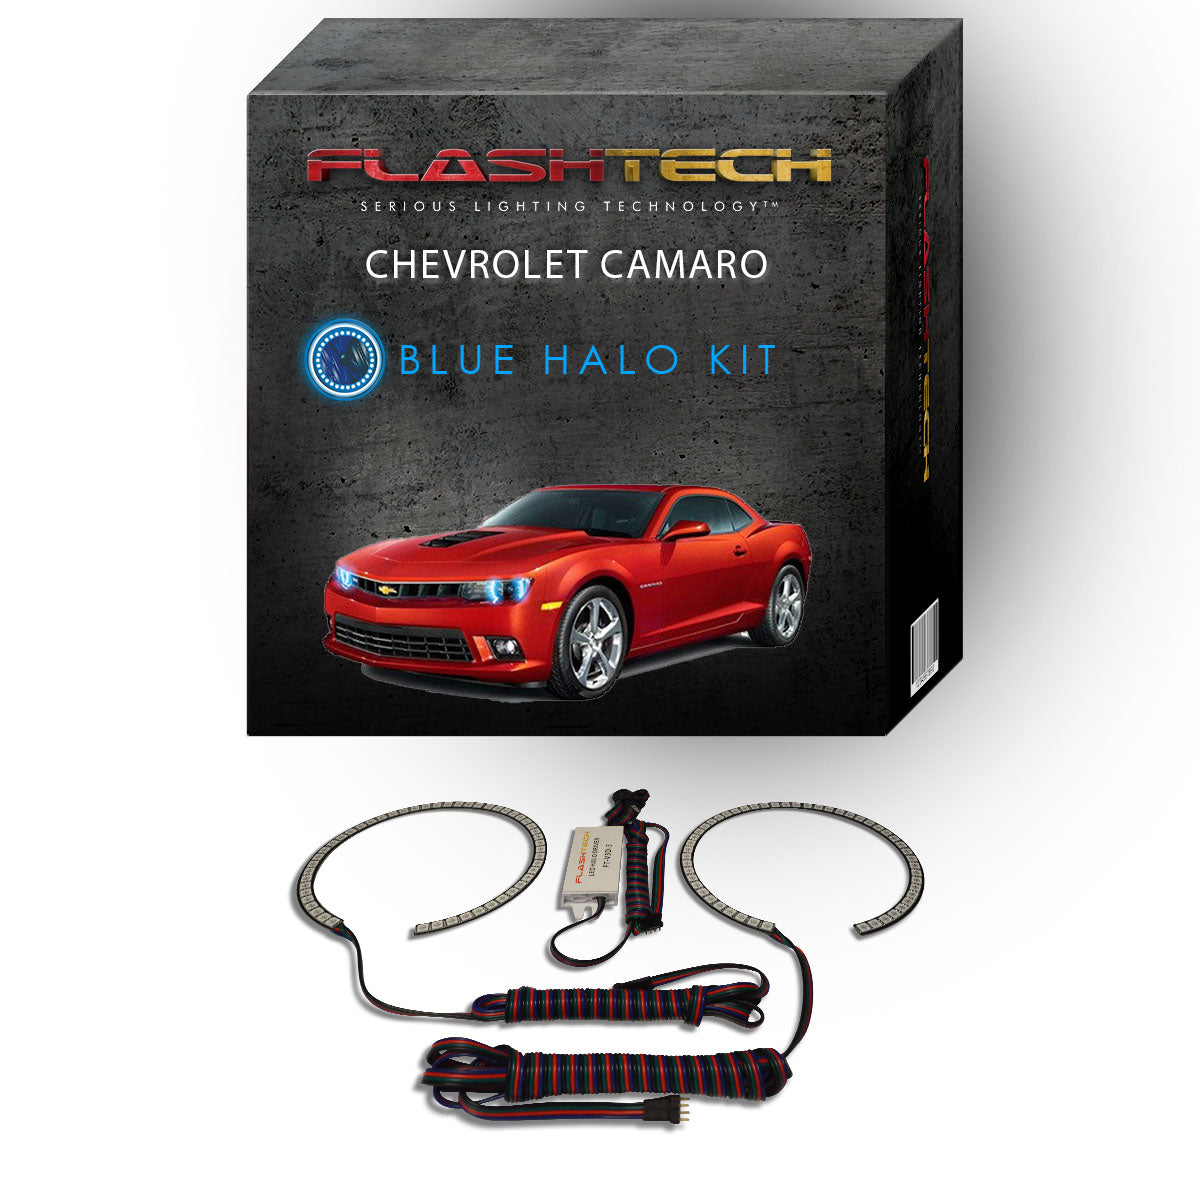 Chevrolet-Camaro-2014, 2015, 2016-LED-Halo-Headlights-RGB-No Remote-CY-CANR14-V3H